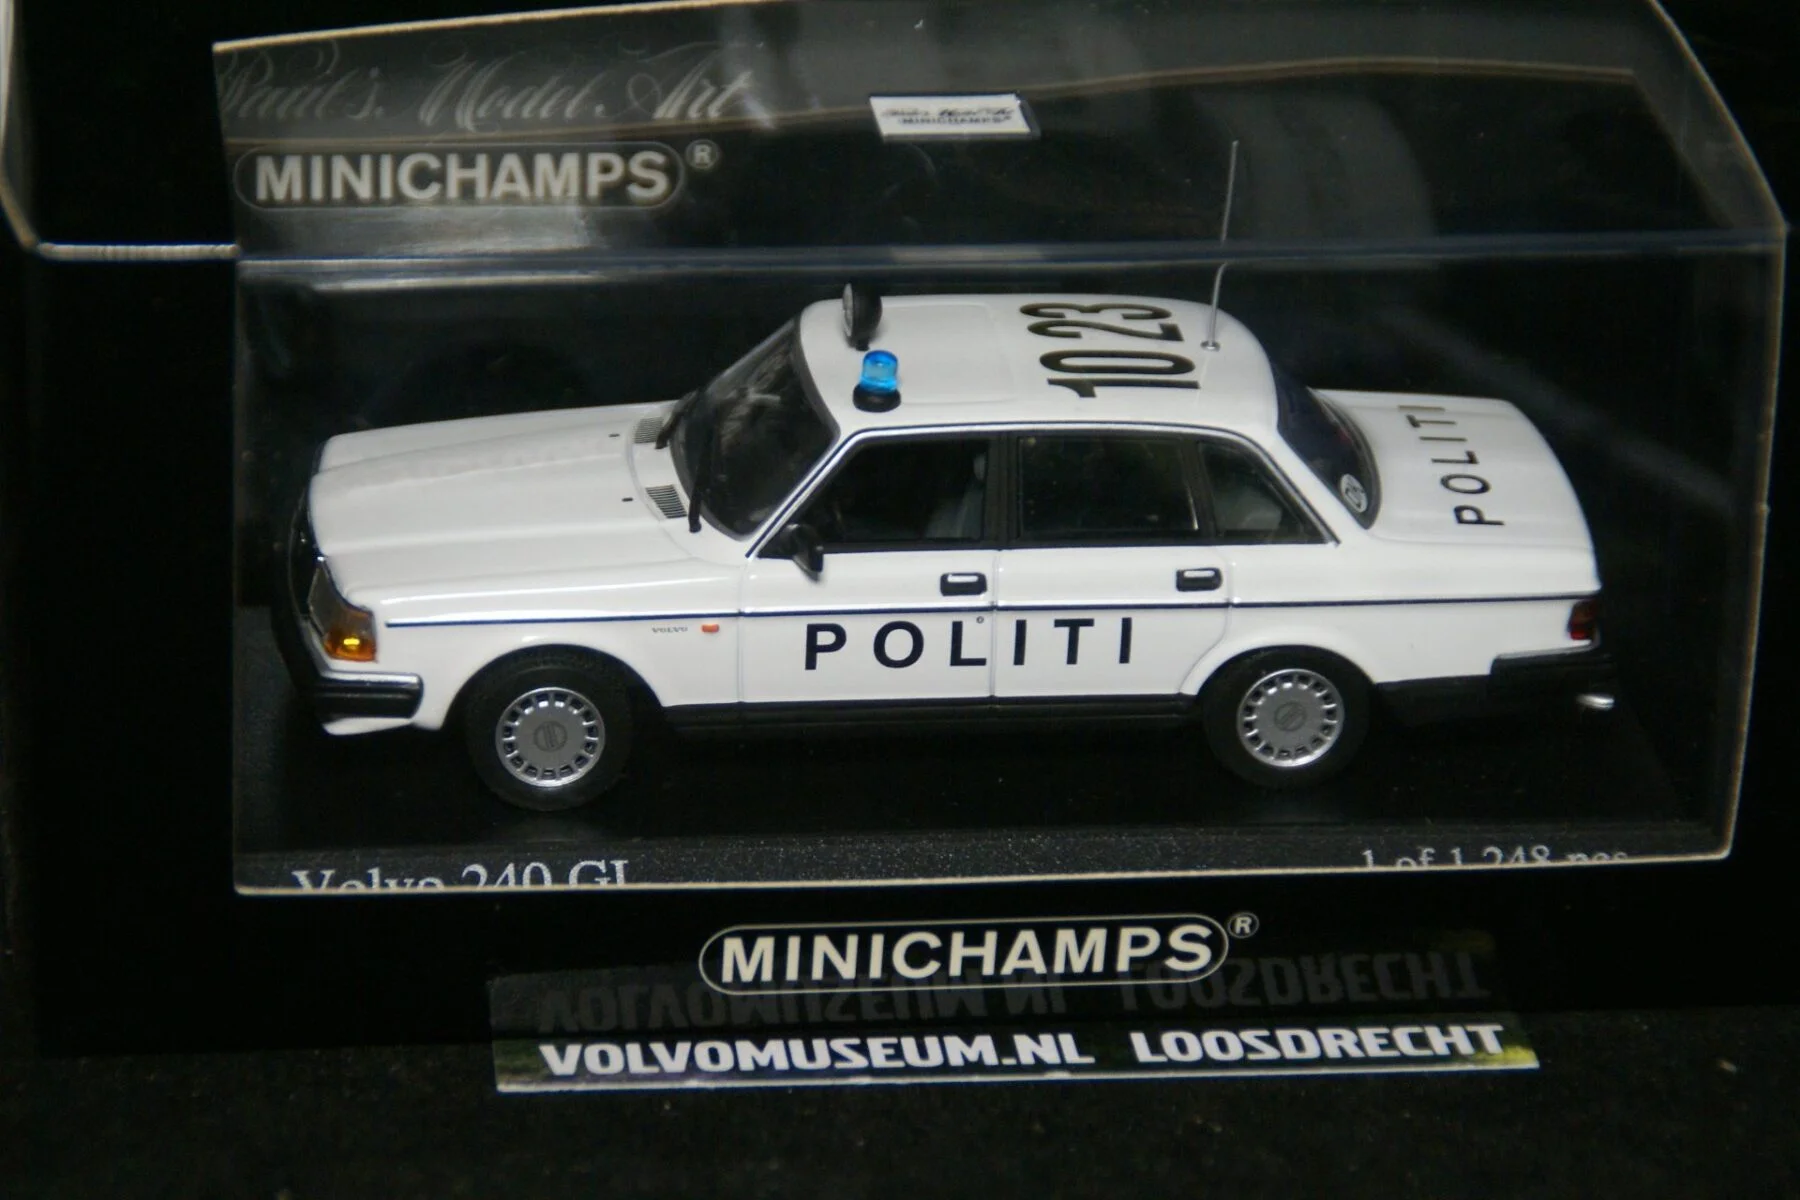 DSC03199 miniatuur 1986 Volvo 244 politi 1op43 Minichamps 171491 1 van 1248 MB